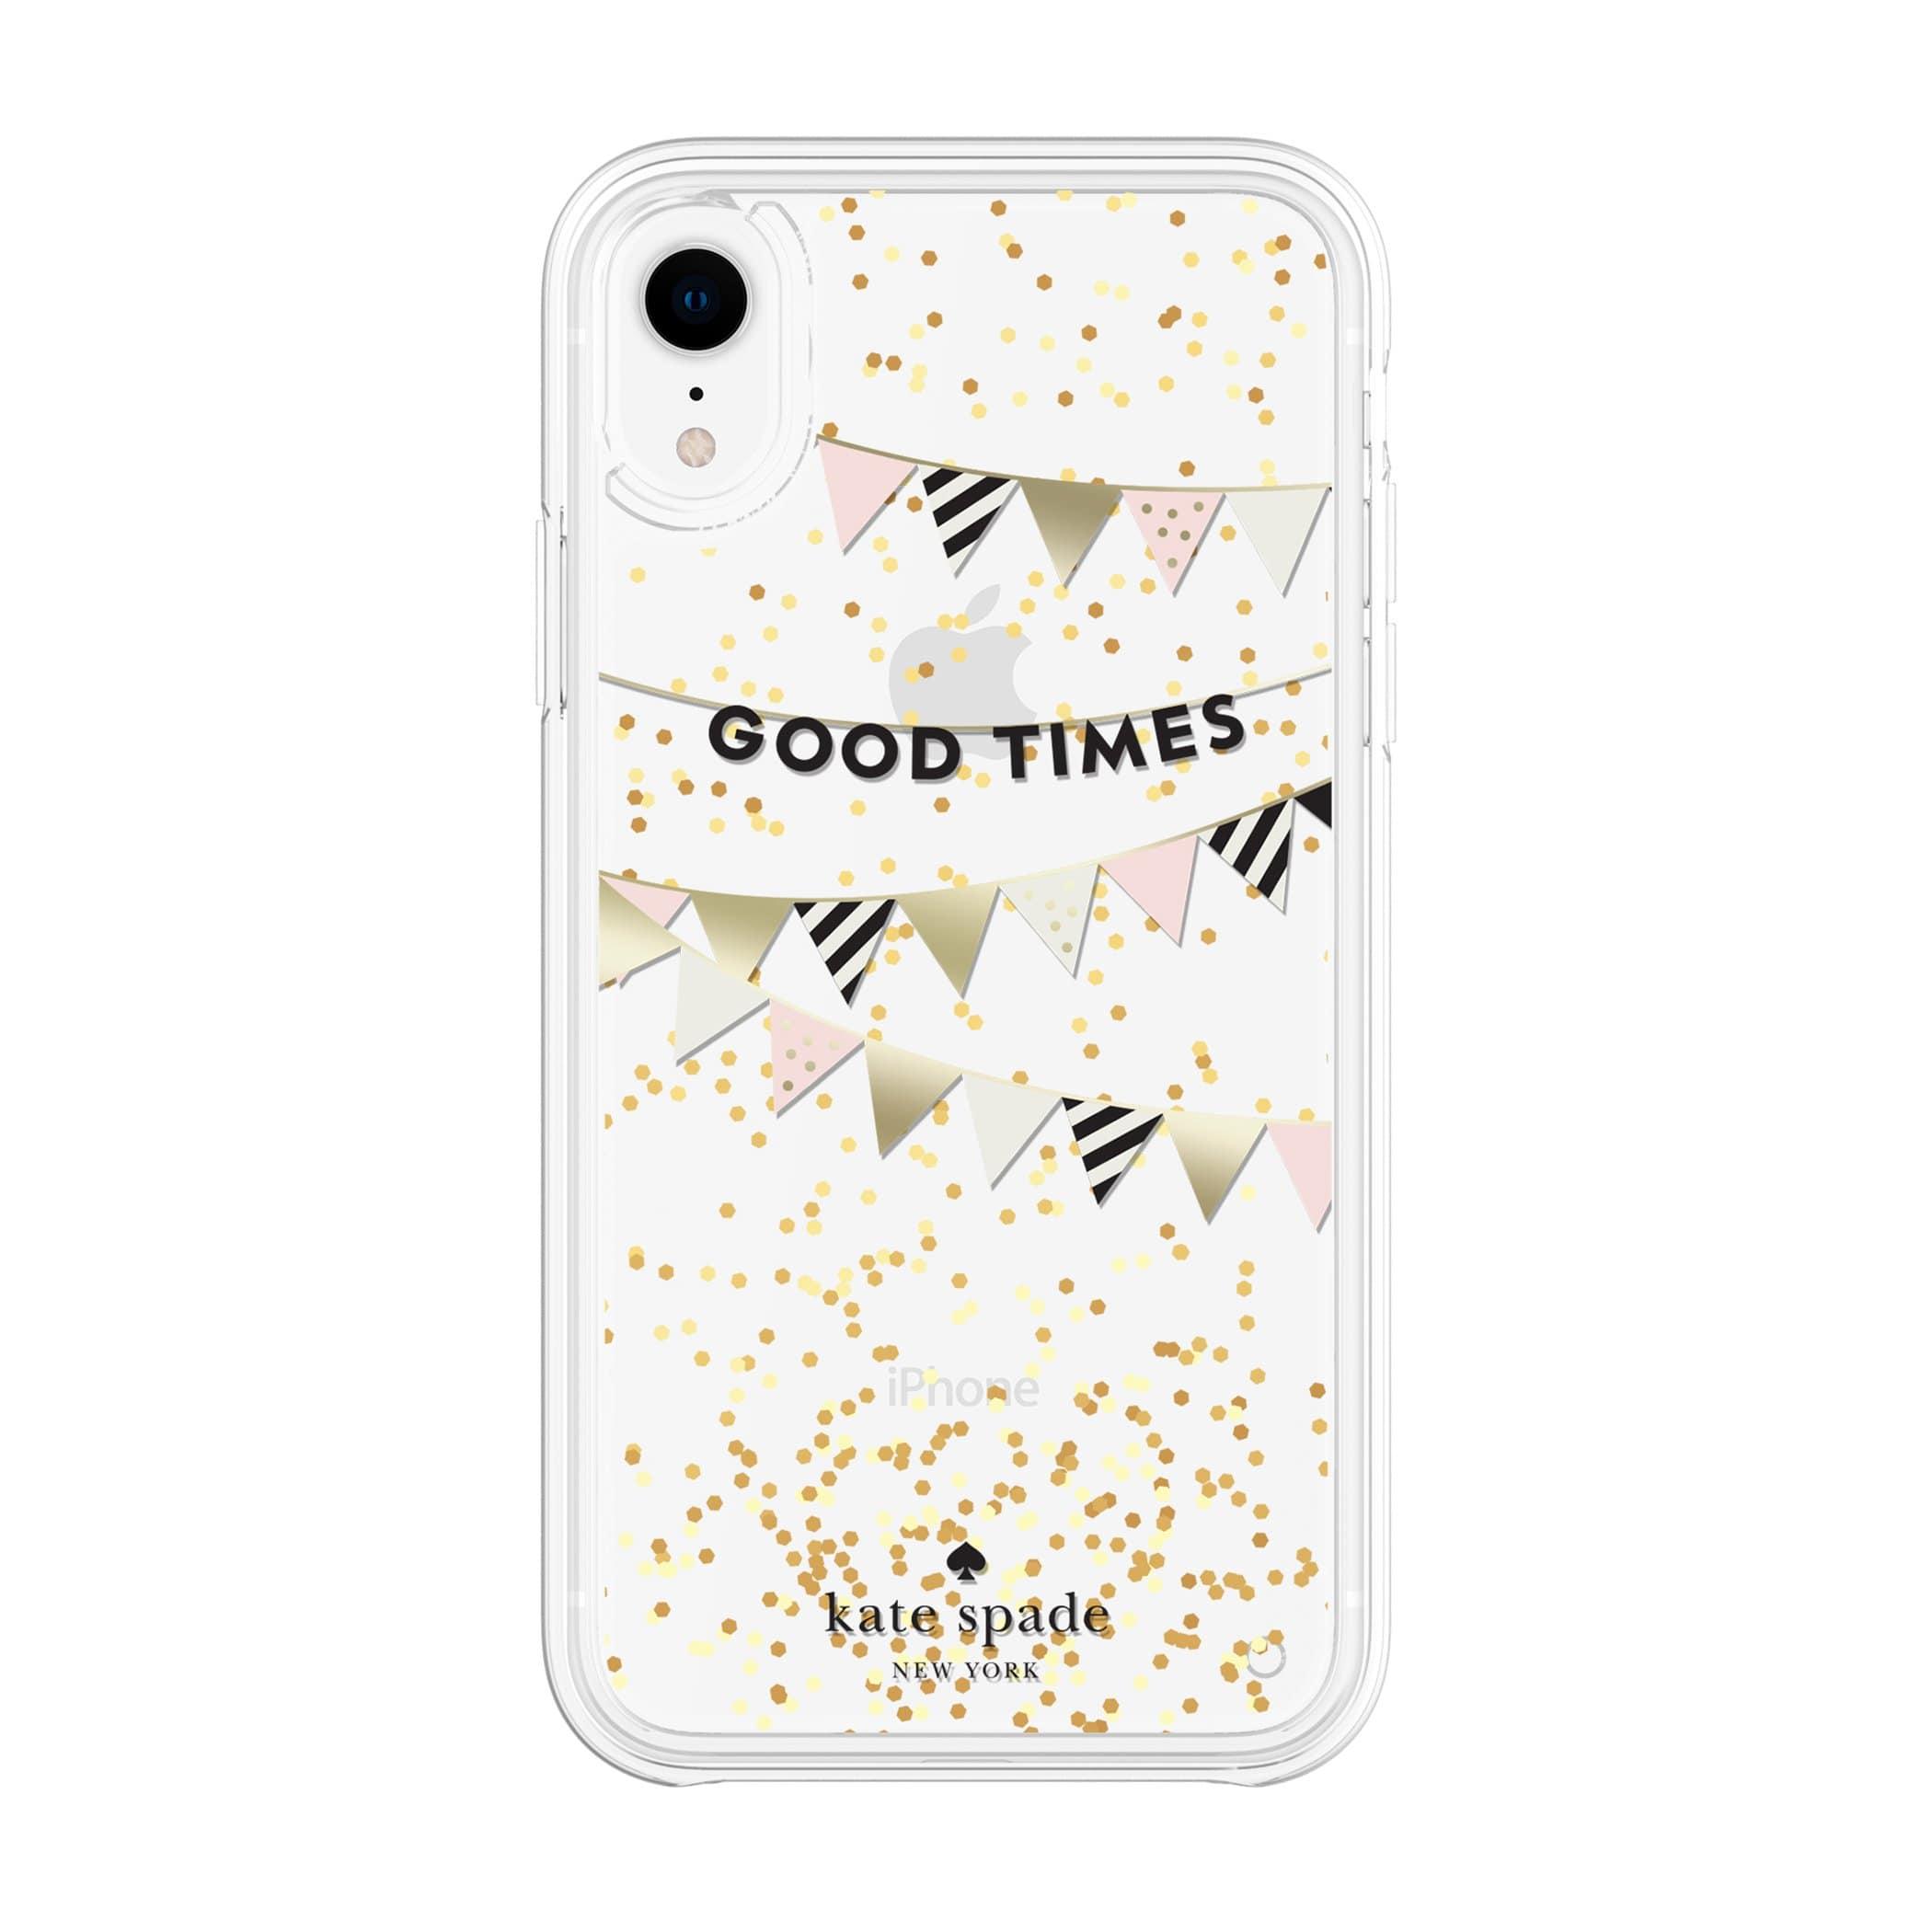 كفر حماية آيفون KATE SPADE NEW YORK Liquid Glitter Case - Good Times Gold For iPhone XR